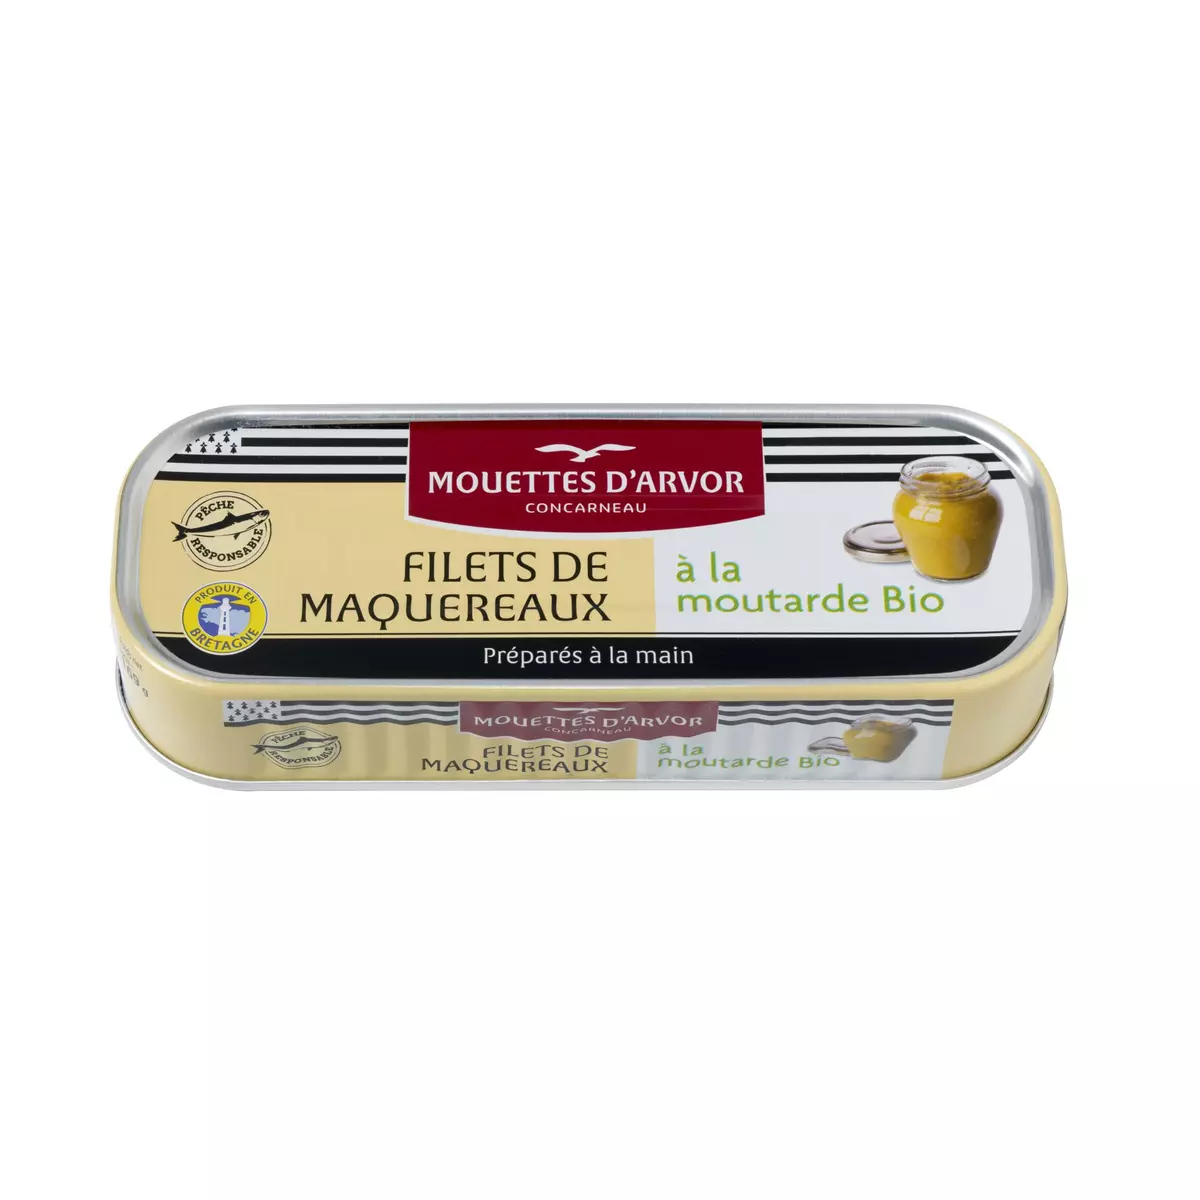 MOUETTES D'ARVOR Filets de maquereaux à la moutarde bio 169g